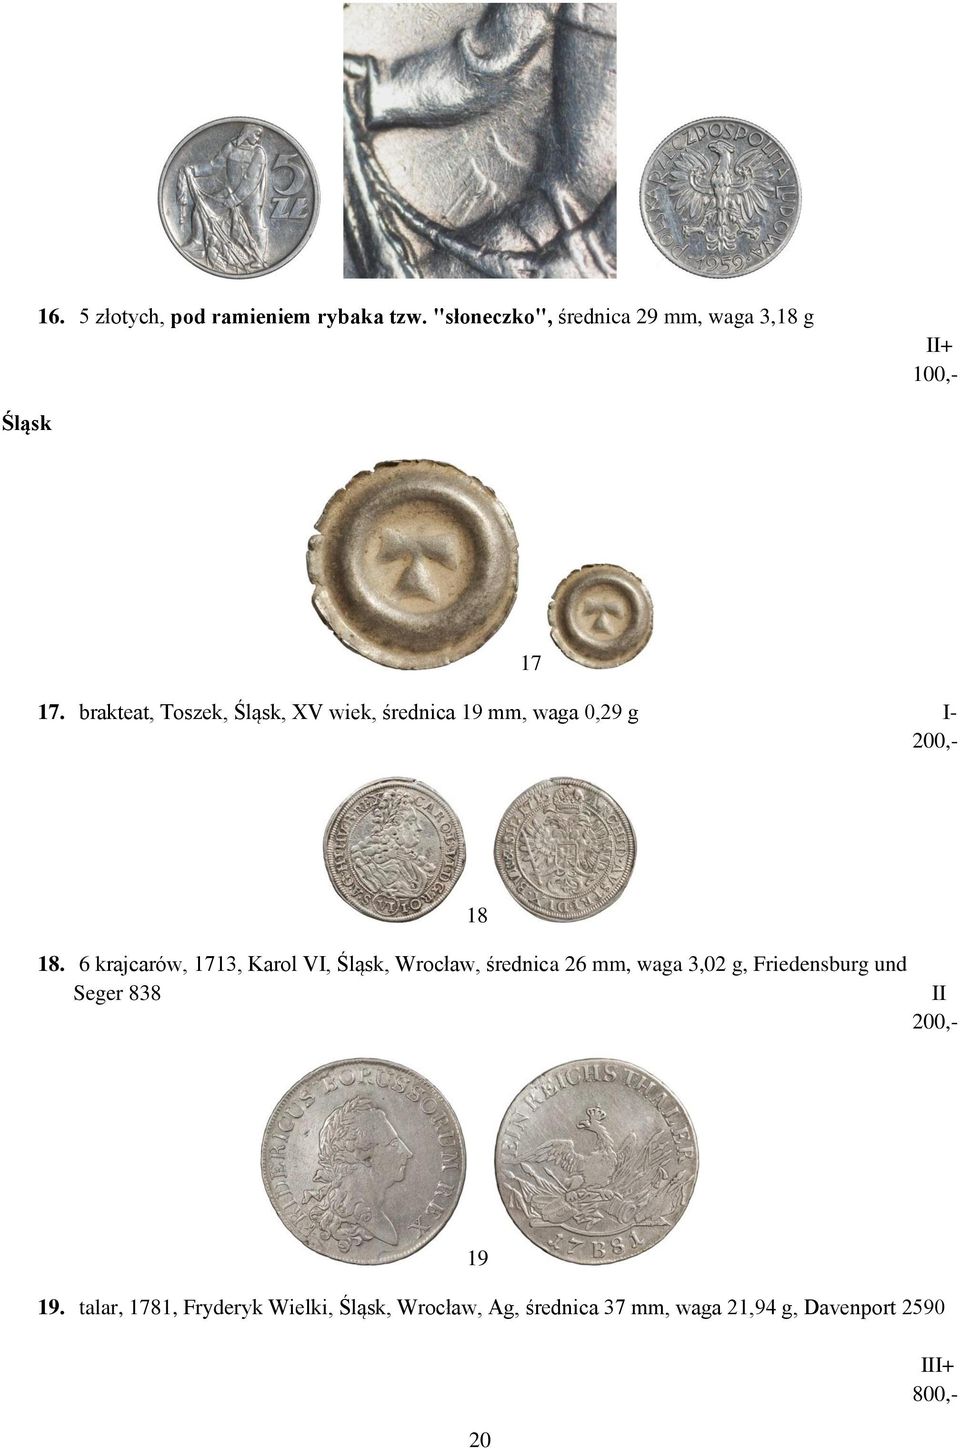 6 krajcarów, 1713, Karol VI, Śląsk, Wrocław, średnica 26 mm, waga 3,02 g, Friedensburg und Seger 838